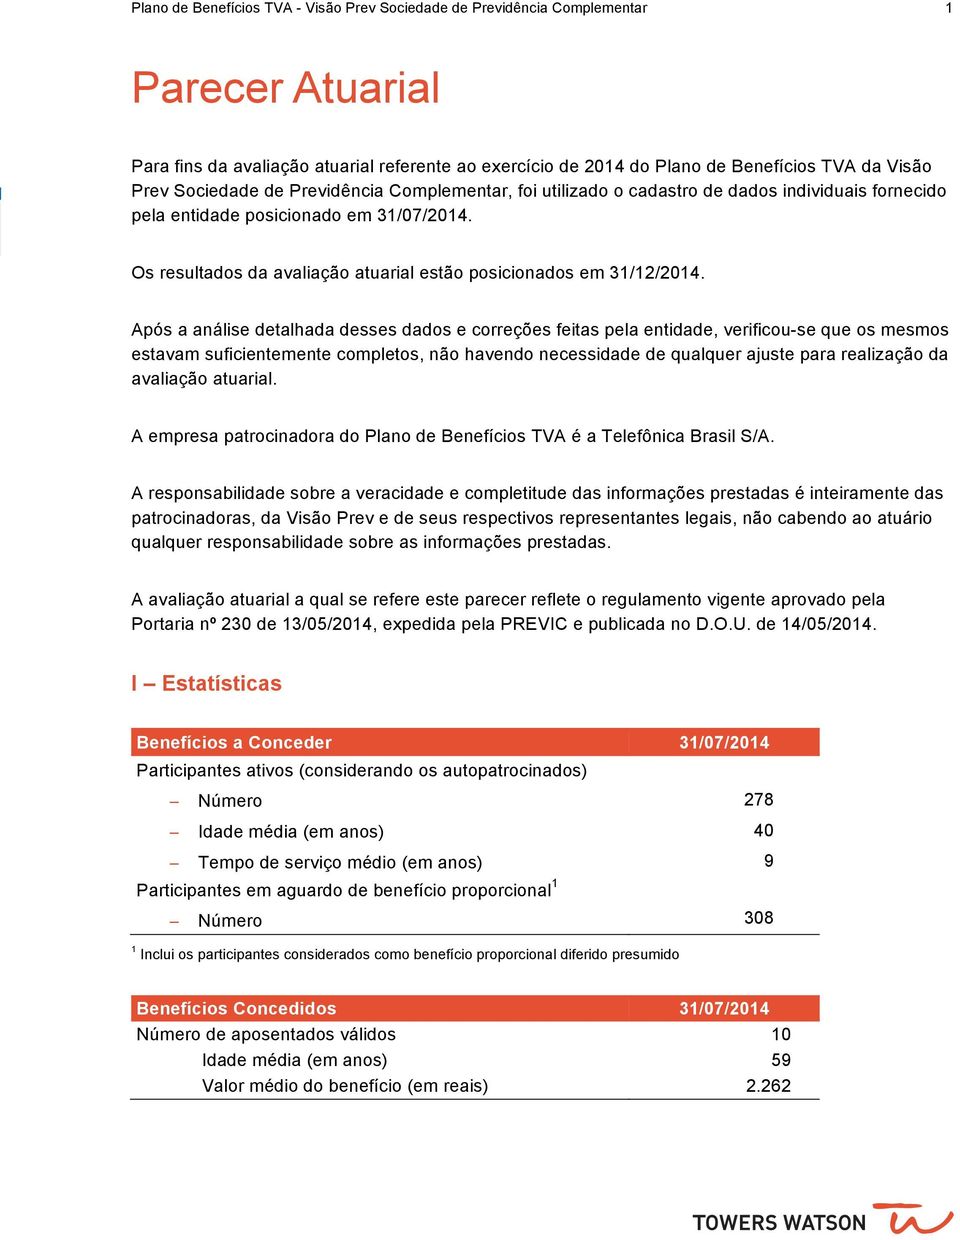 Os resultados da avaliação atuarial estão posicionados em 31/12/2014.